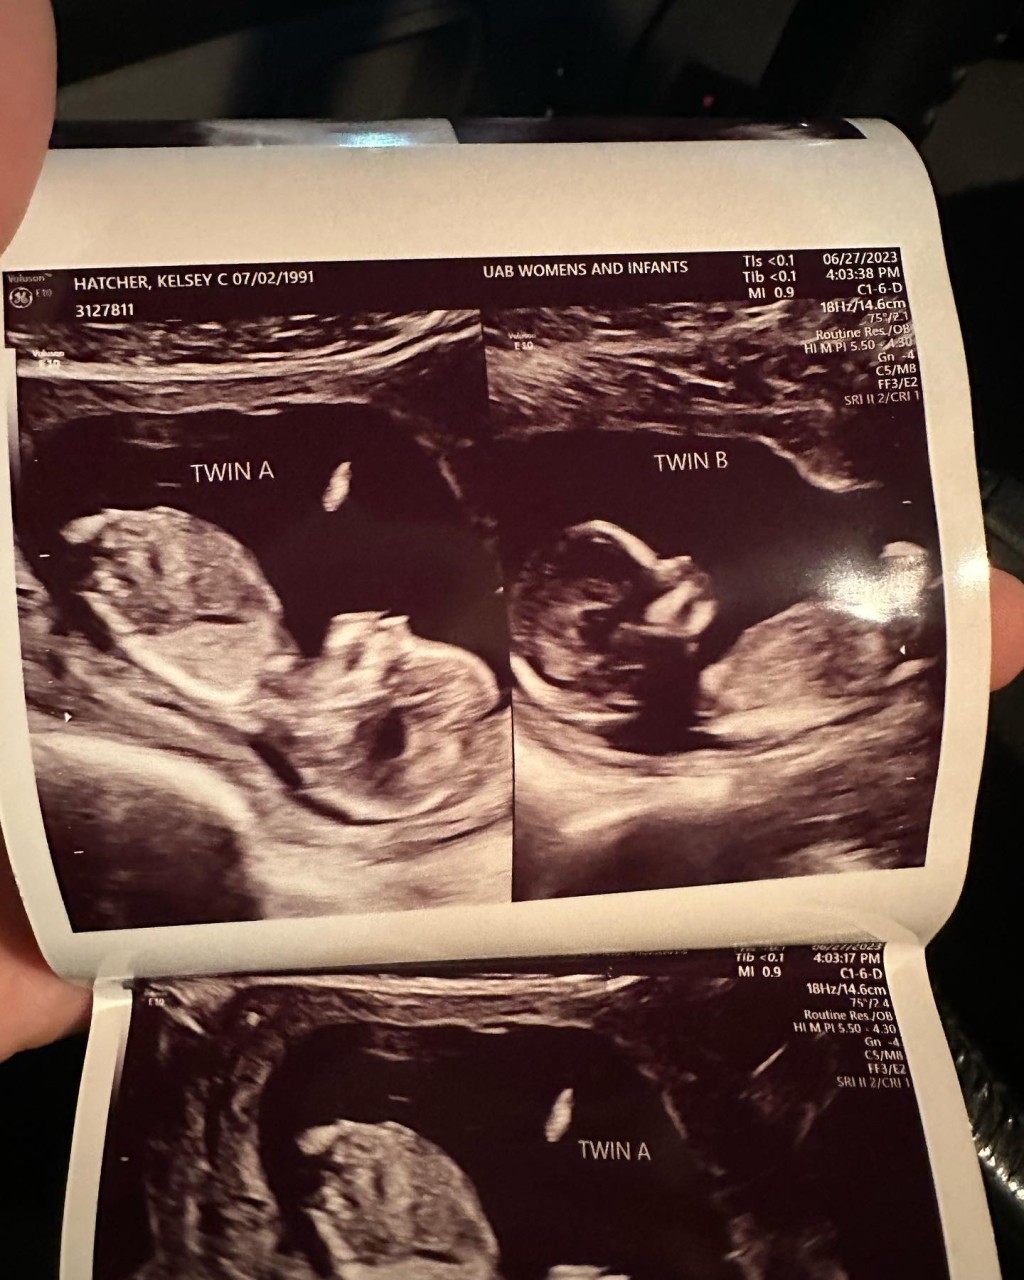 超聲波檢查發現海契爾兩個子宮同時懷孕。IG